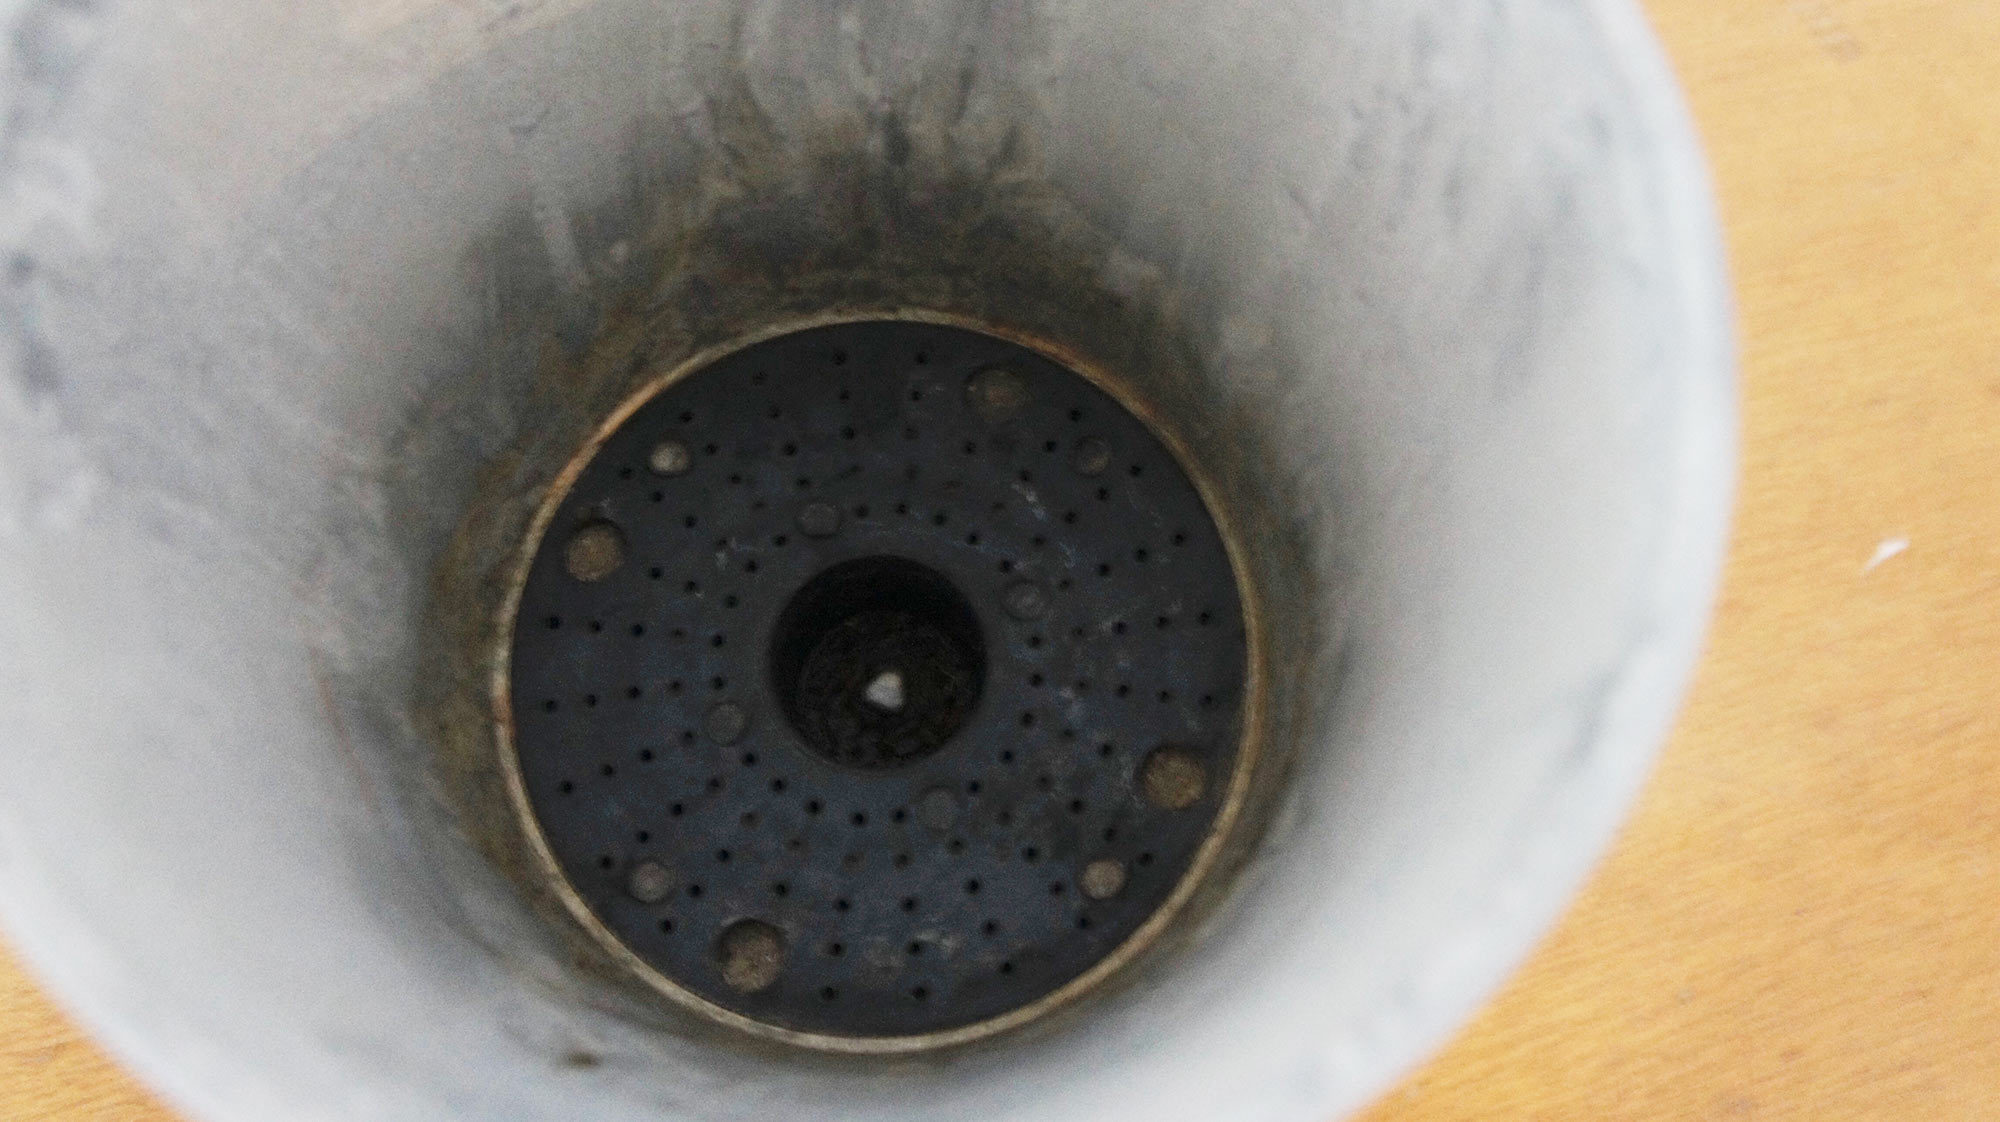 鉢底には貯水スペースが設置されています。この発想はなかったと、思わず感心してしまいました。